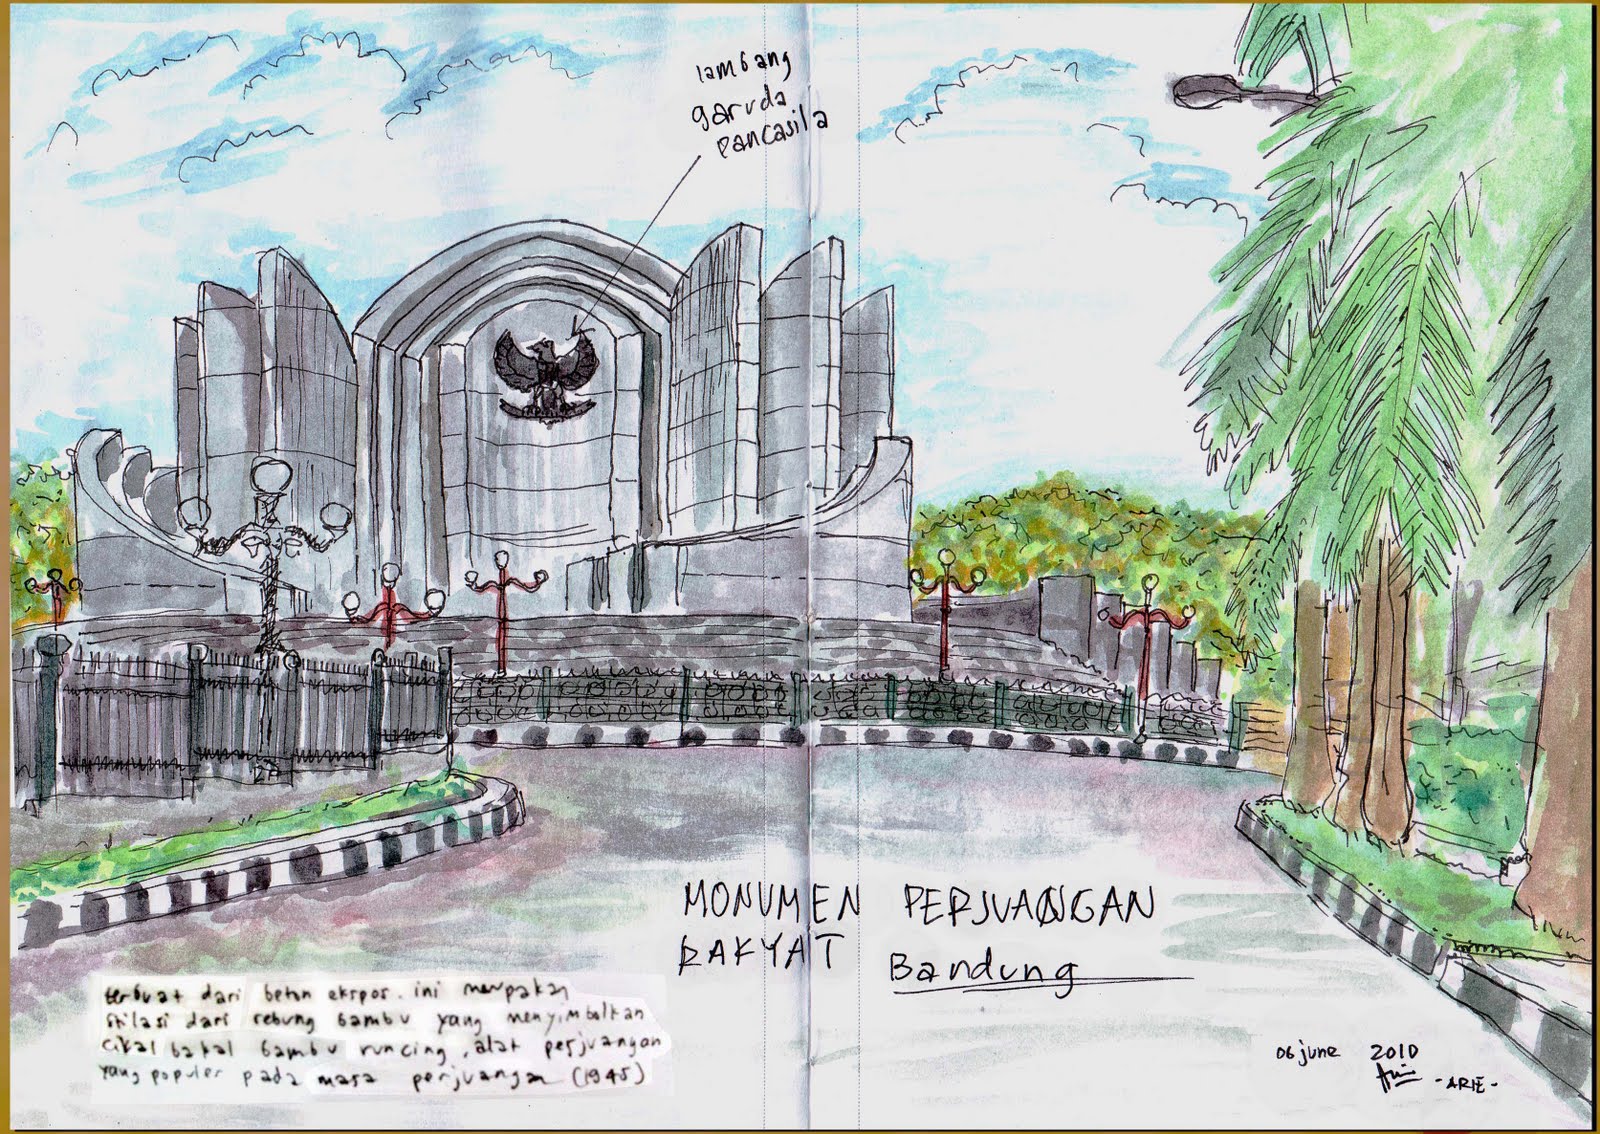 Indonesias Sketchers Monumen Perjuangan Bandung